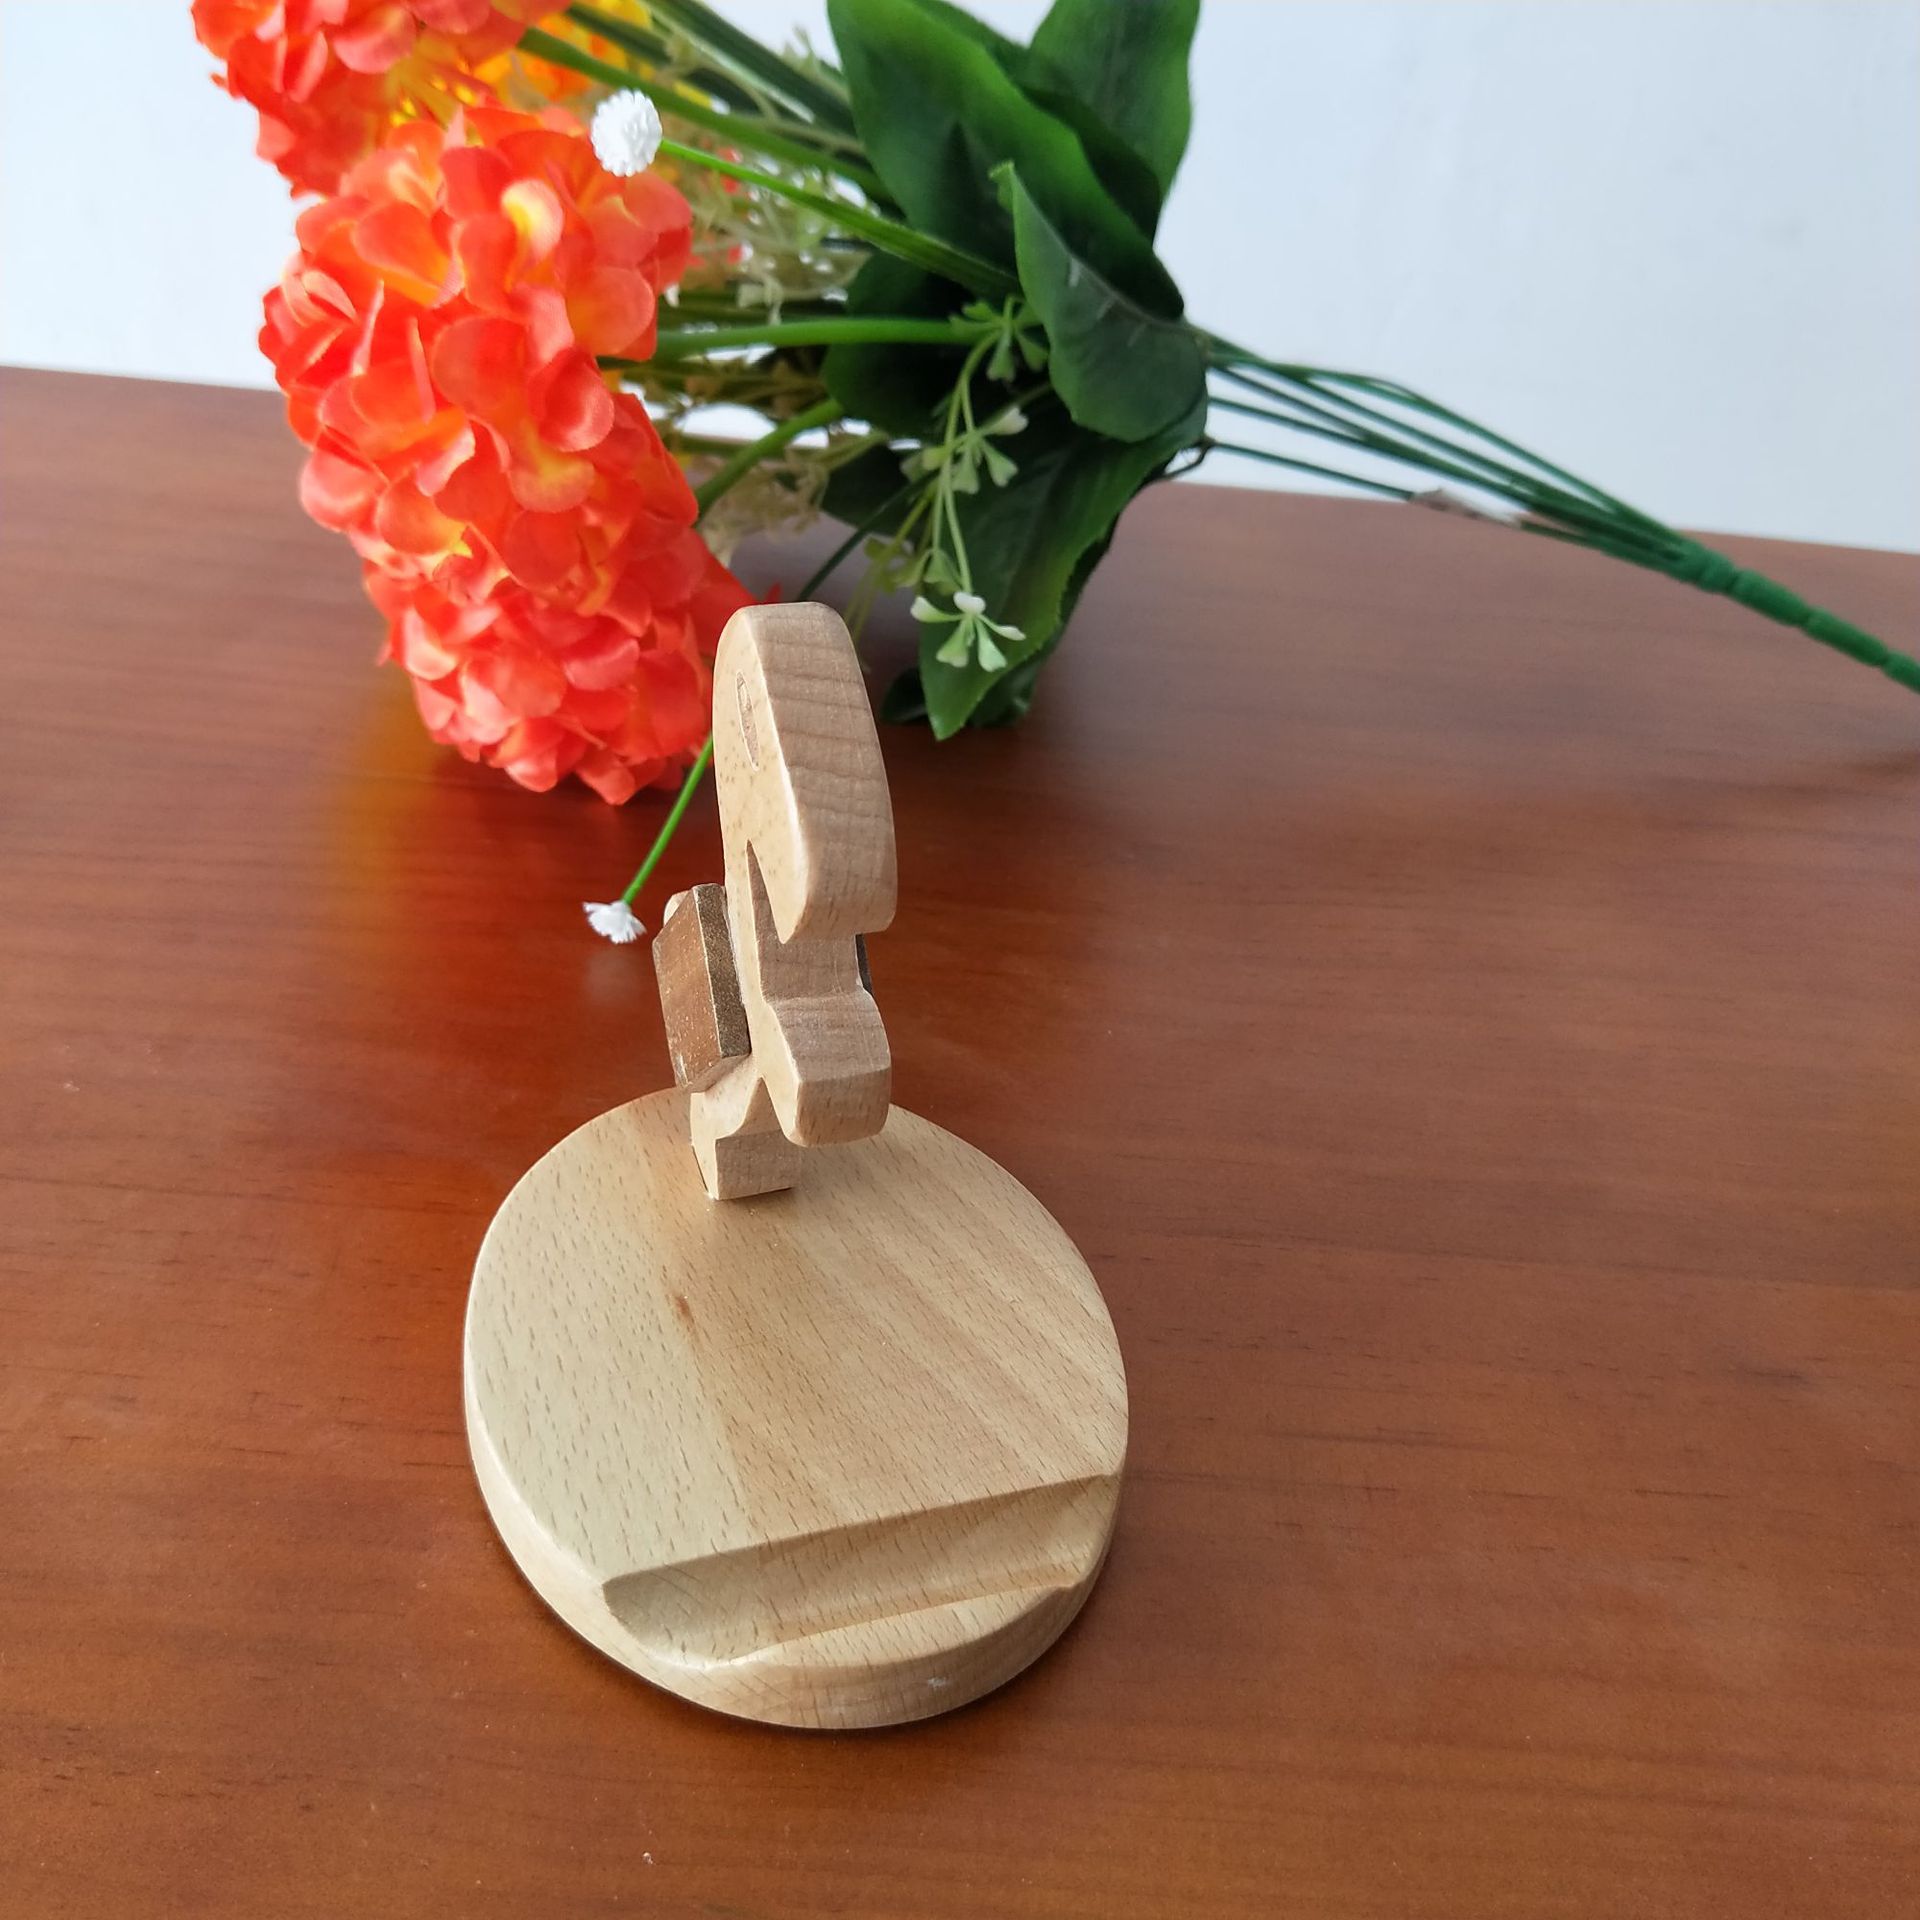 木头做的简单工艺品,简易手工木制品图,木工制作小工艺品_大山谷图库